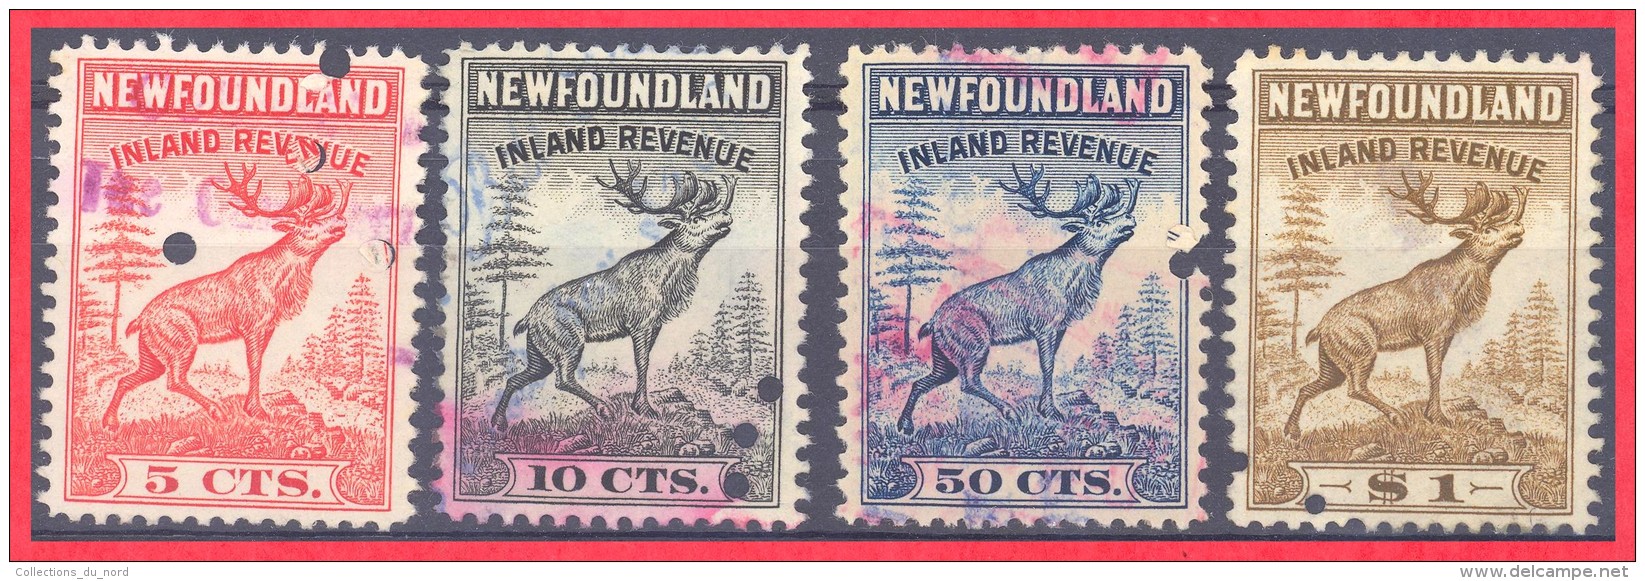 Canada Newfoundland # NFR 36, 37, 39, 40 O VF  - Inland Revenue - Fine Di Catalogo (Back Of Book)